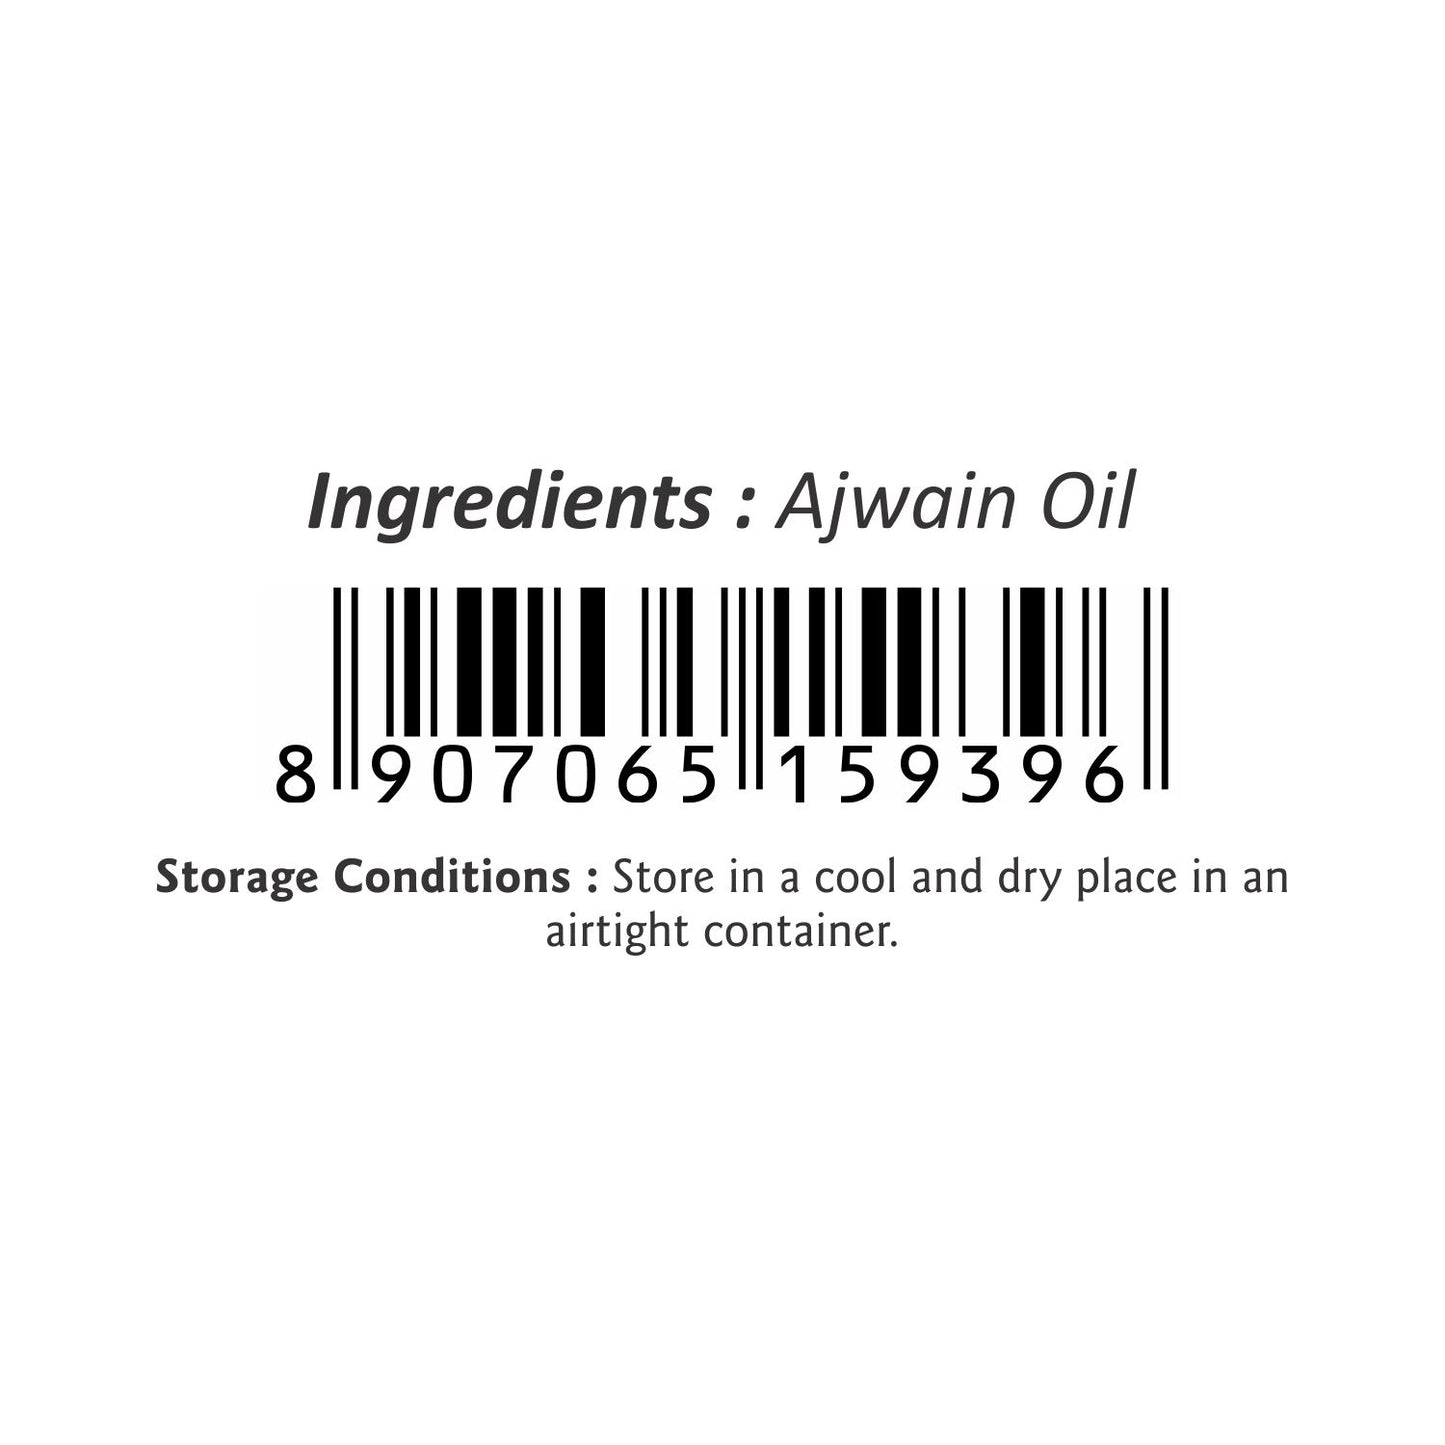 Puramio Ajwain Essential Oil [Undiluted]100% Natural & Pure, 30ml